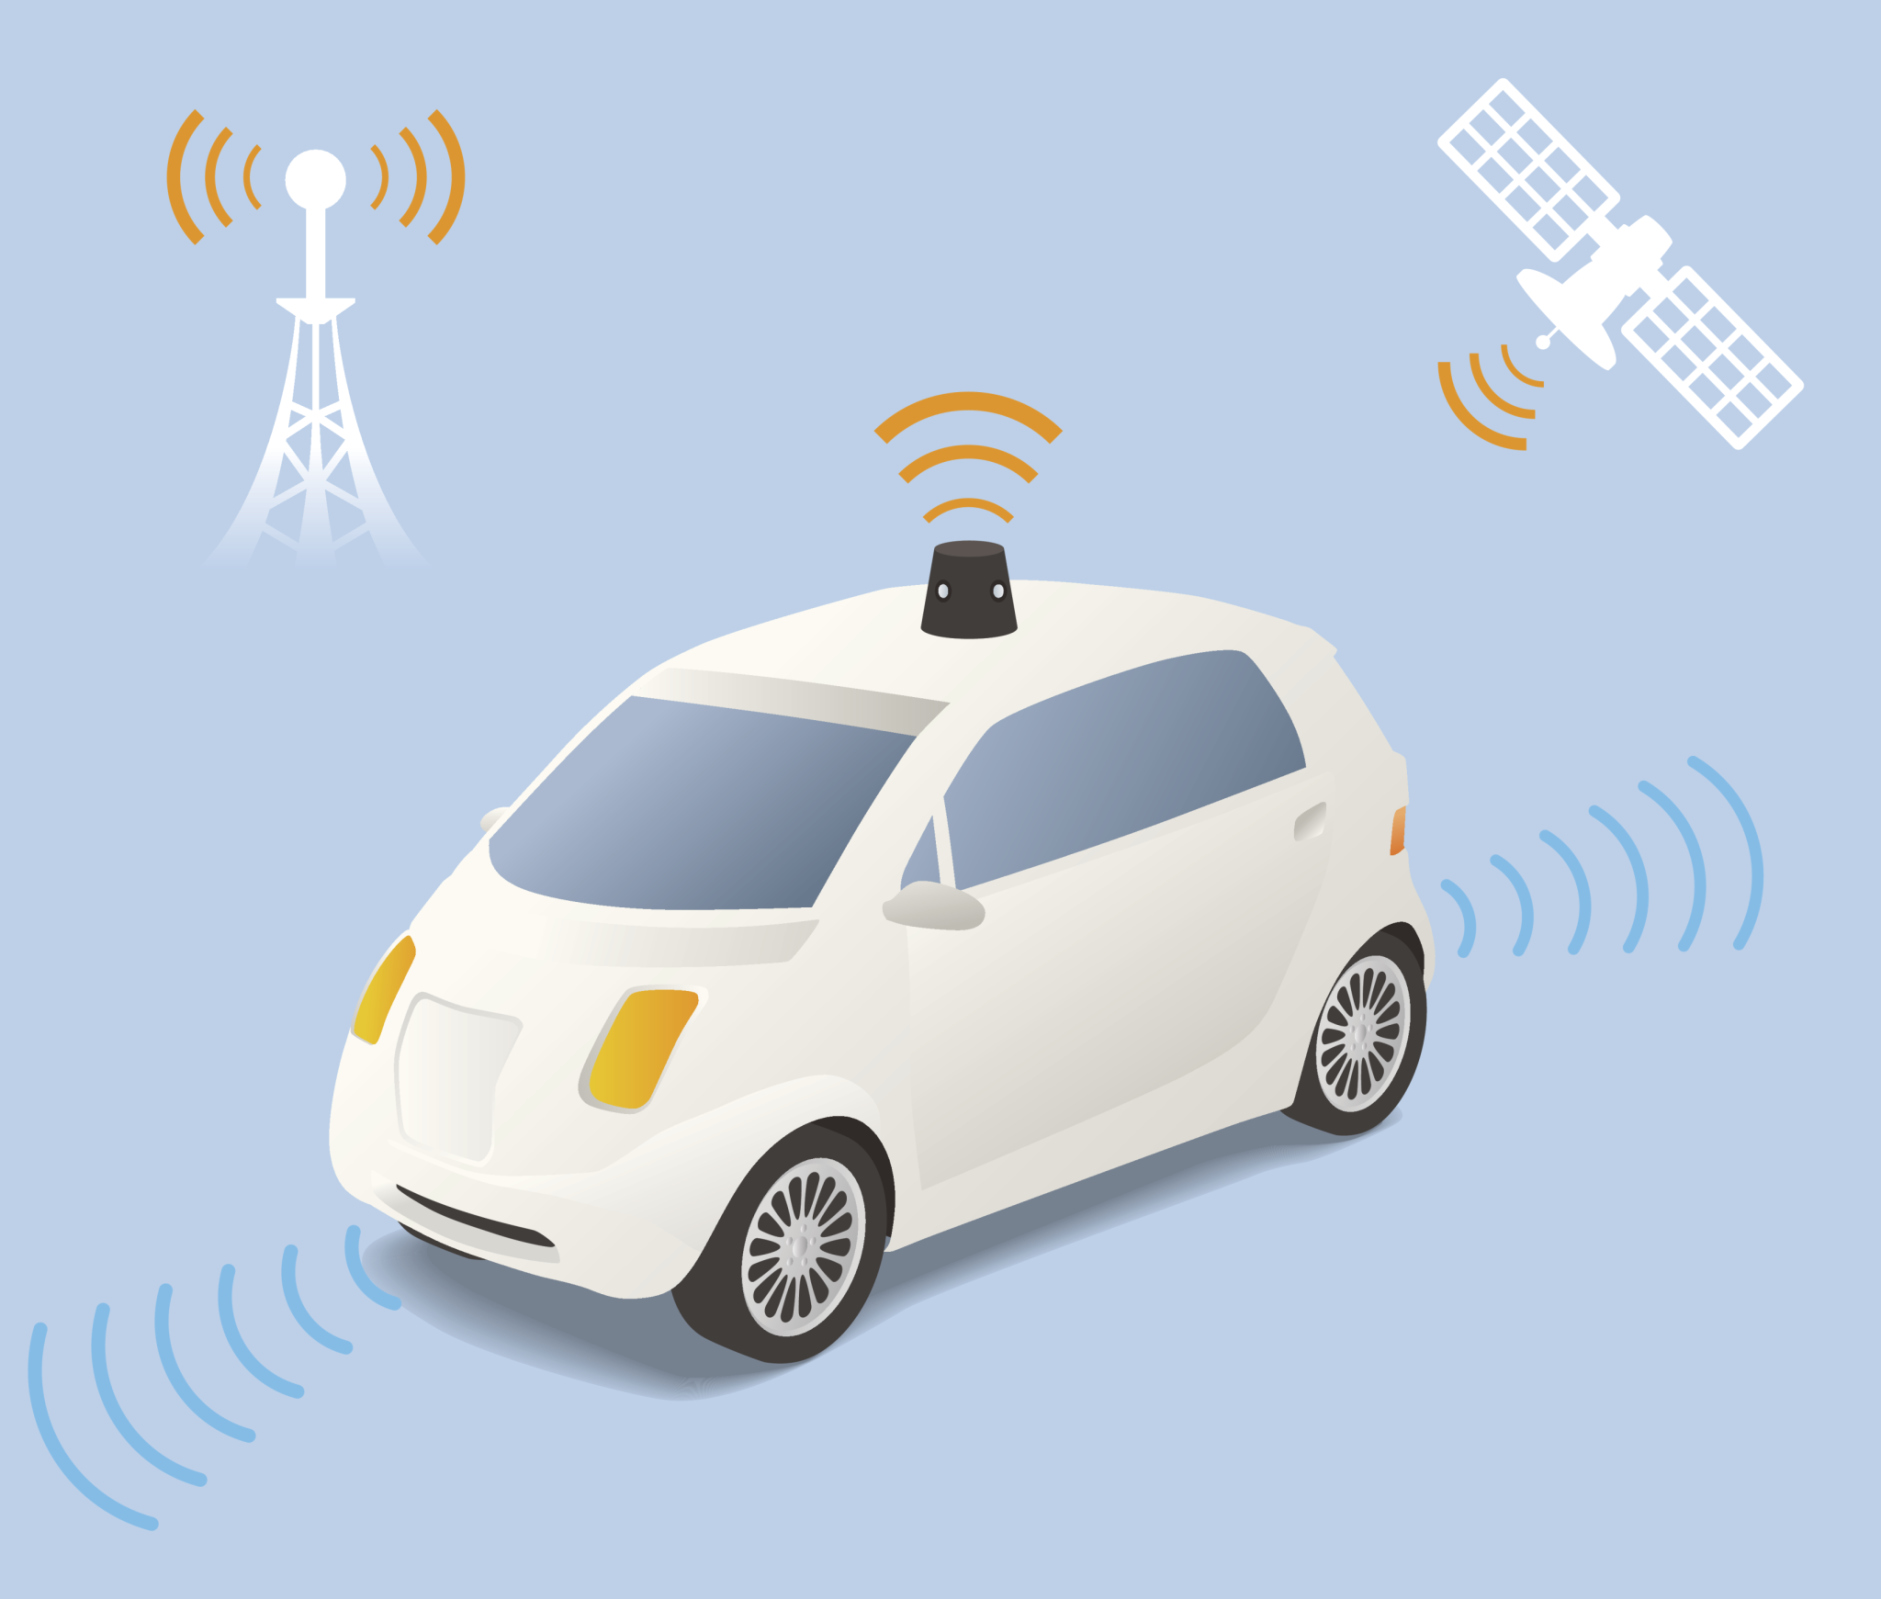 Driverless Car (autonomous vehicle) Image Illustration, vector